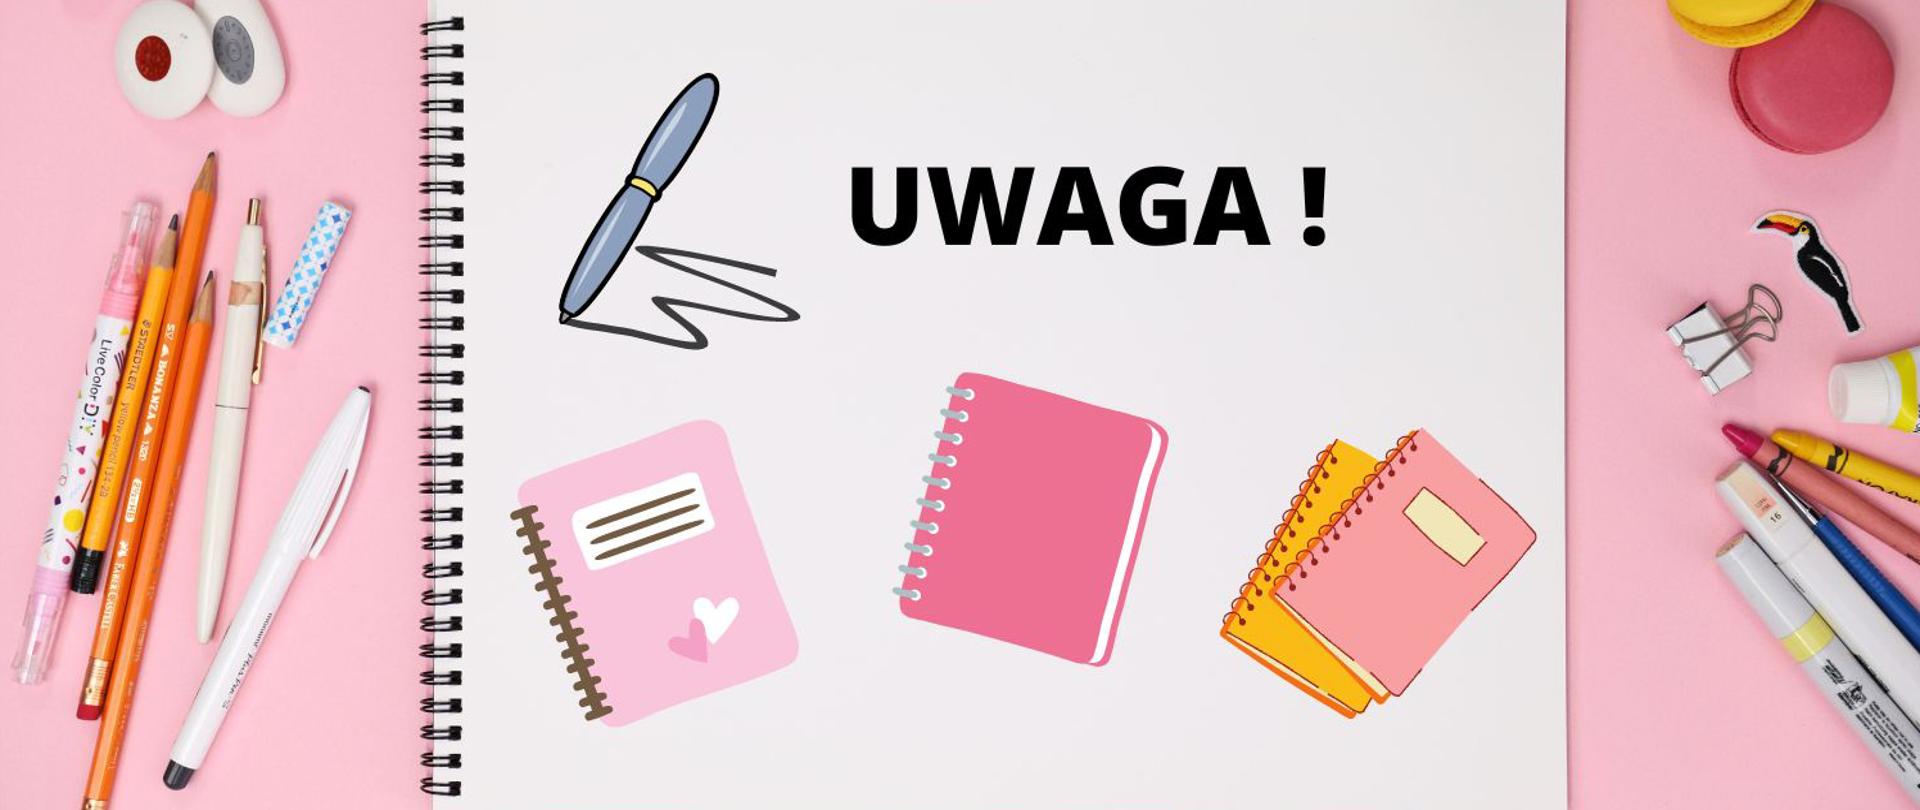 grafika przedstawiająca notatnik z napisem UWAGA! oraz długopisy, ołówki gumki do mazania, spinacze i klipsy do dokumentów ułożone na różowym tle